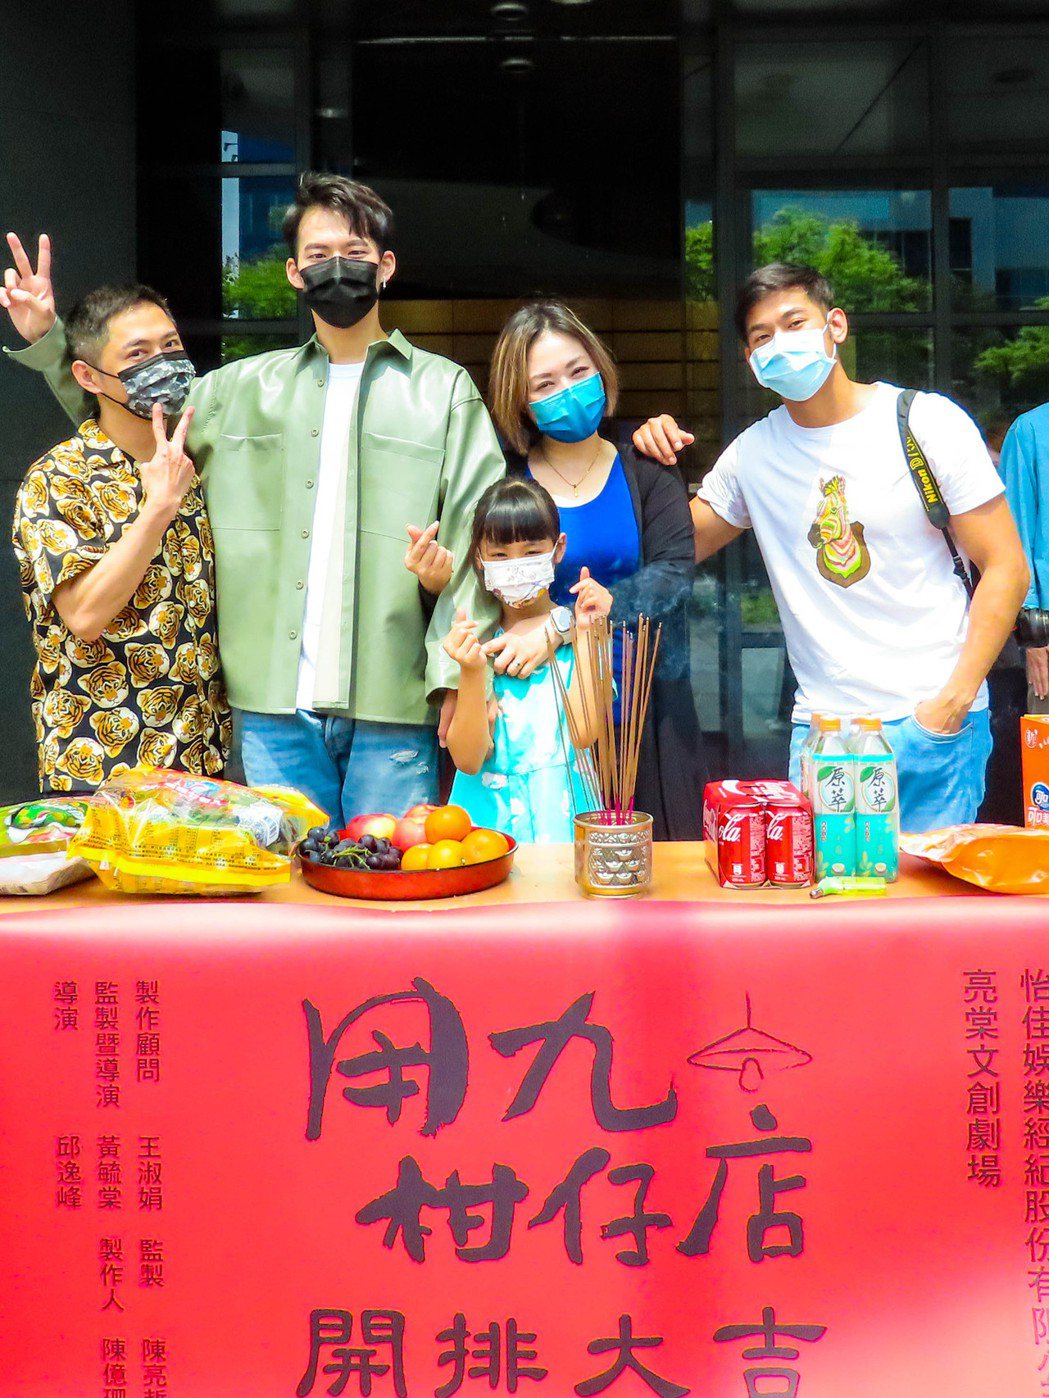 亮哲(右起)和女兒及老婆黃毓棠、吳念軒一起出席舞台劇版「用九柑仔店」開排儀式。圖